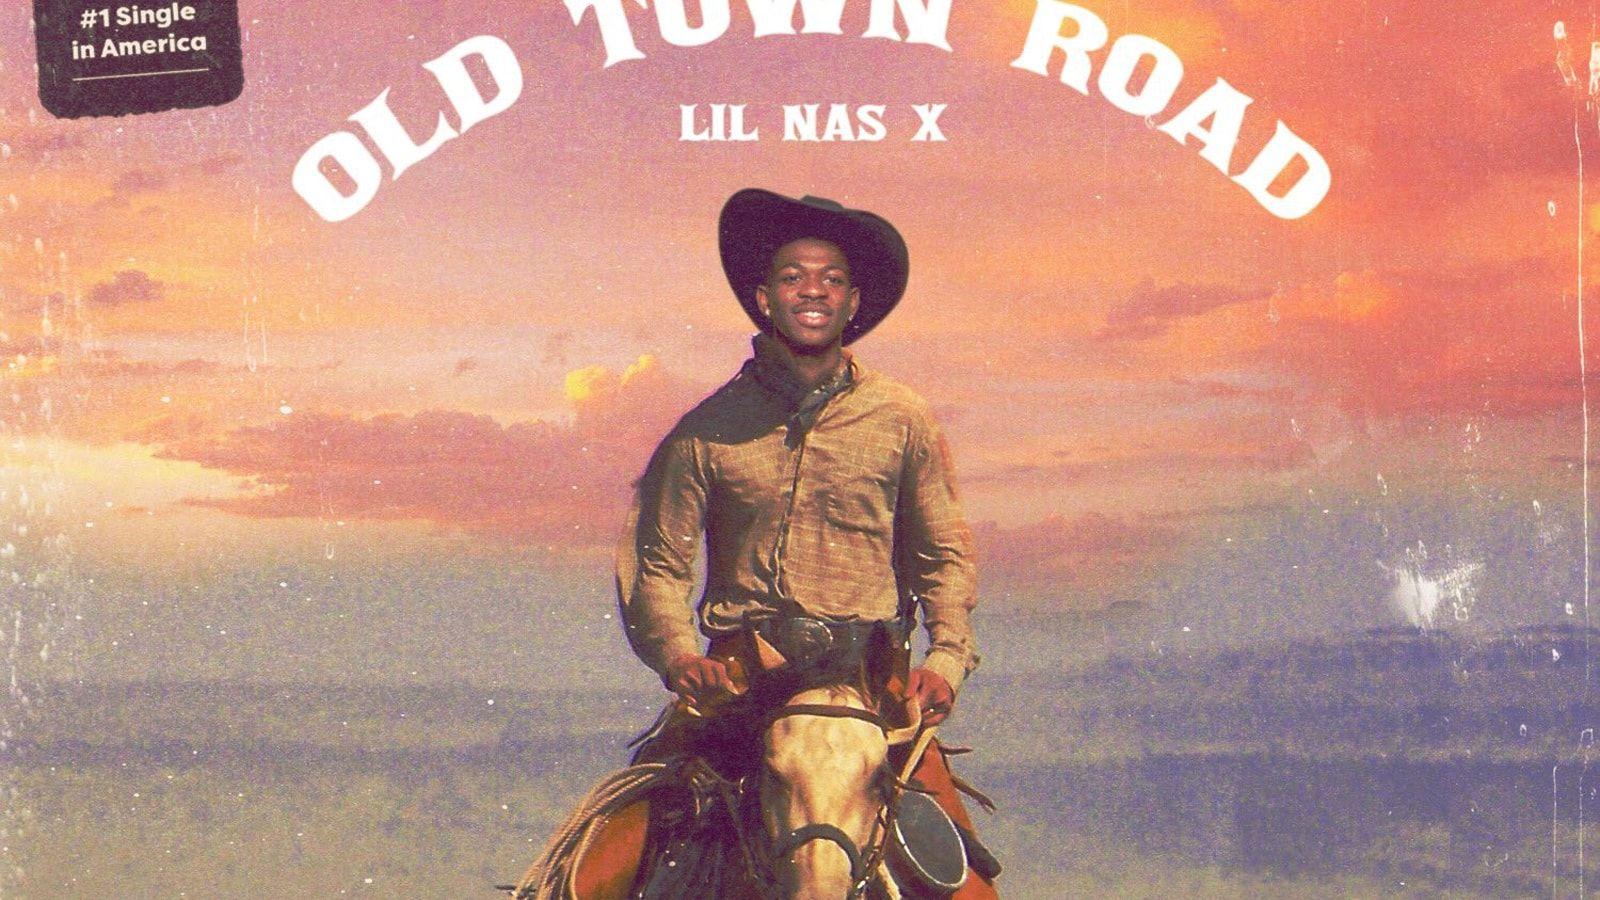 Old town road lil nas x песня. Lil nas x old Town Road. Old Town  обложка. Old Town Road Lil nas x Billy ray Cyrus обложка.